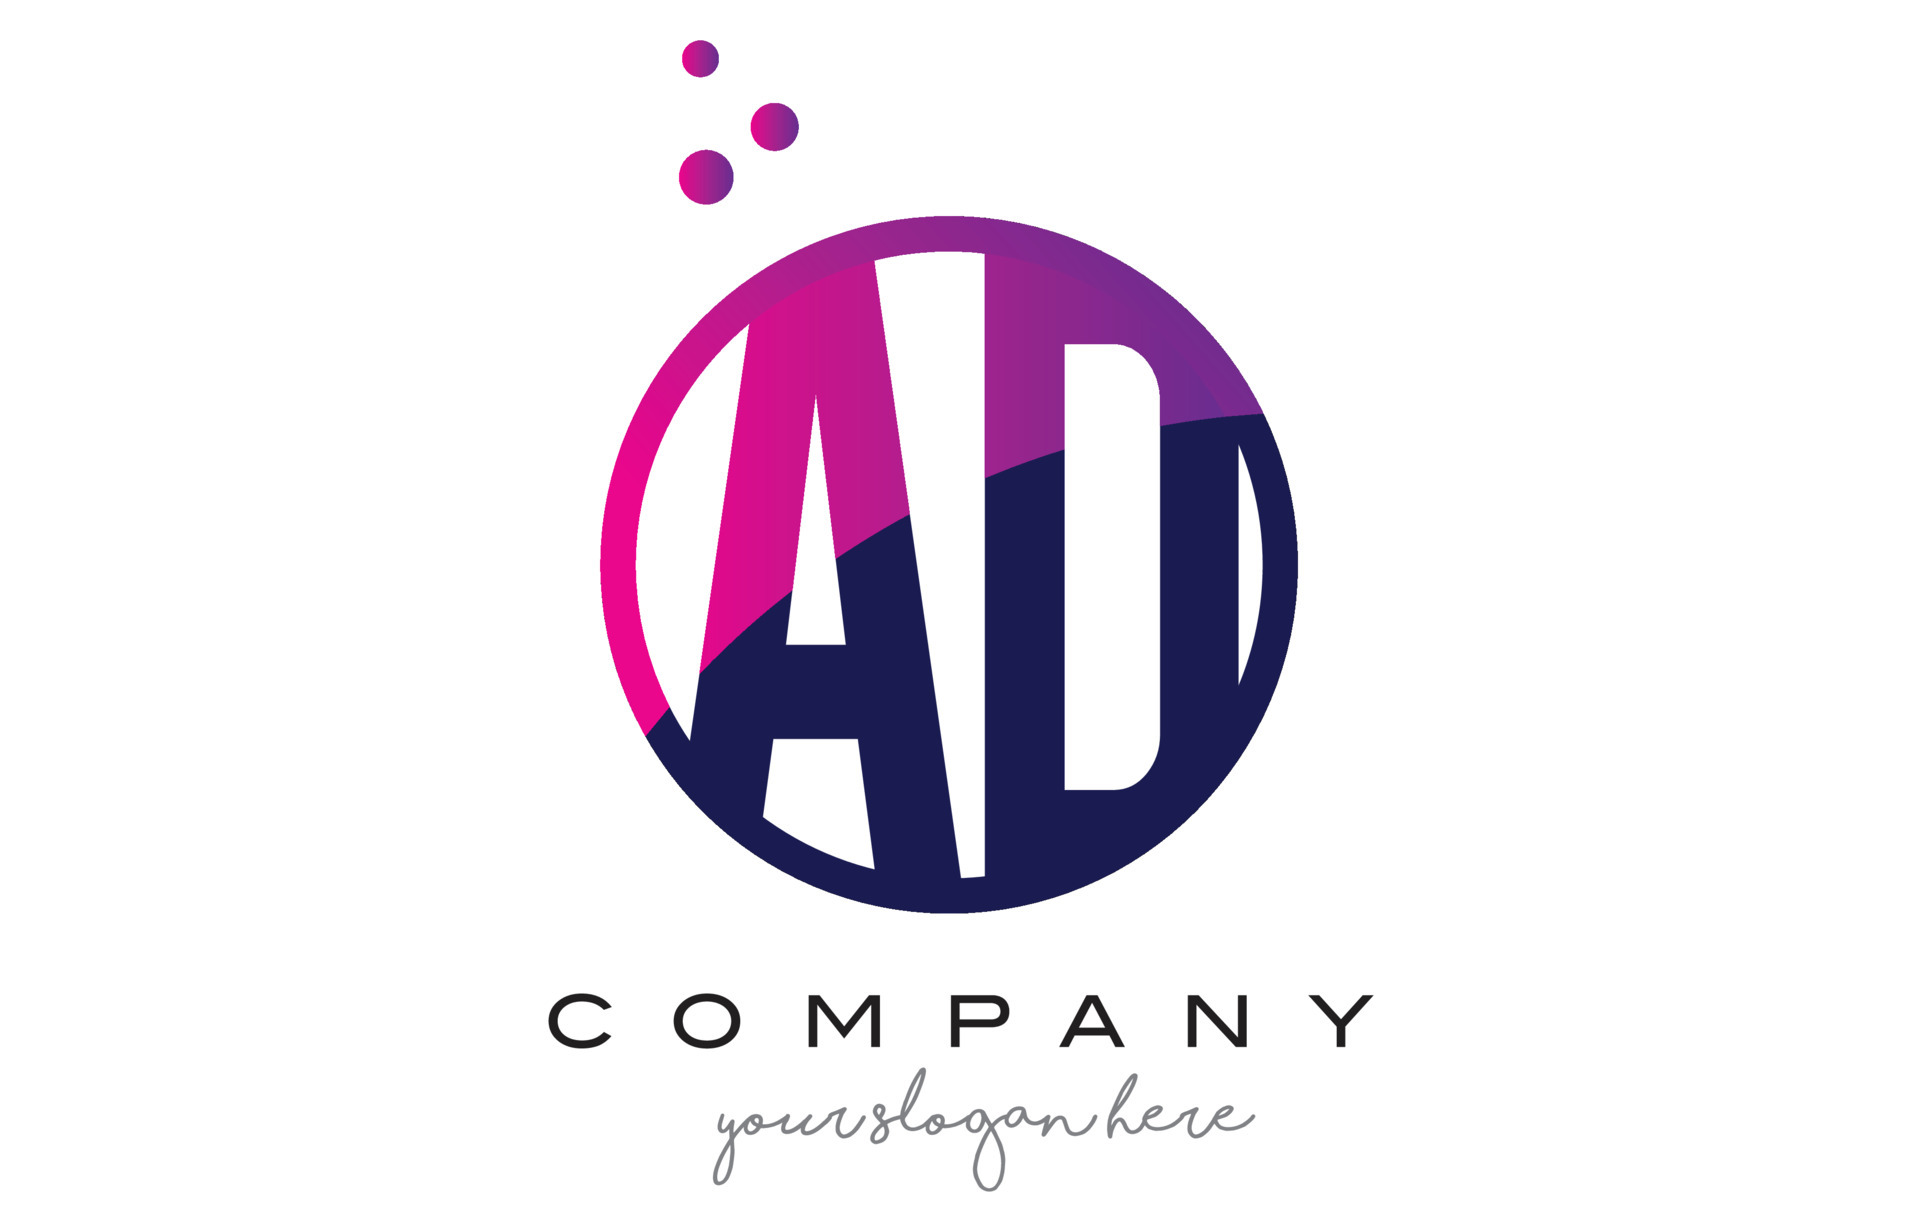 AD A D Circle Letter Logo Design with Purple Dots Bubbles 4904499 ...